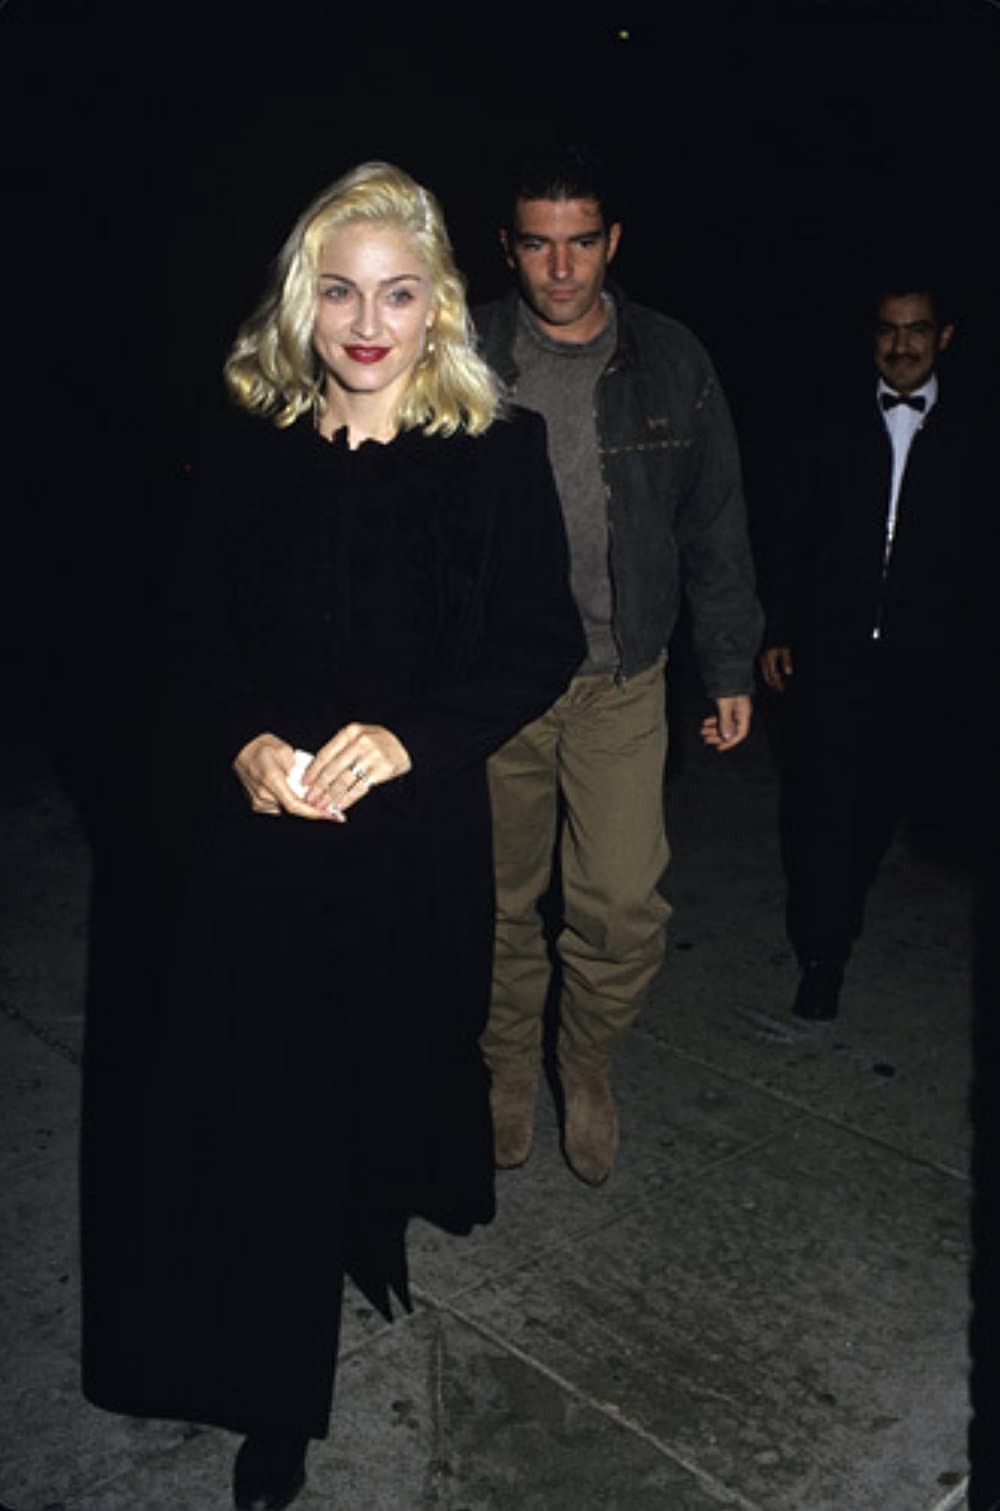 Nữ hoàng nhạc Pop Madonna: Hẹn hò toàn trai trẻ nhưng lại vương vấn mãi mối tình đơn phương không hồi đáp với tài tử nổi tiếng - Ảnh 12.